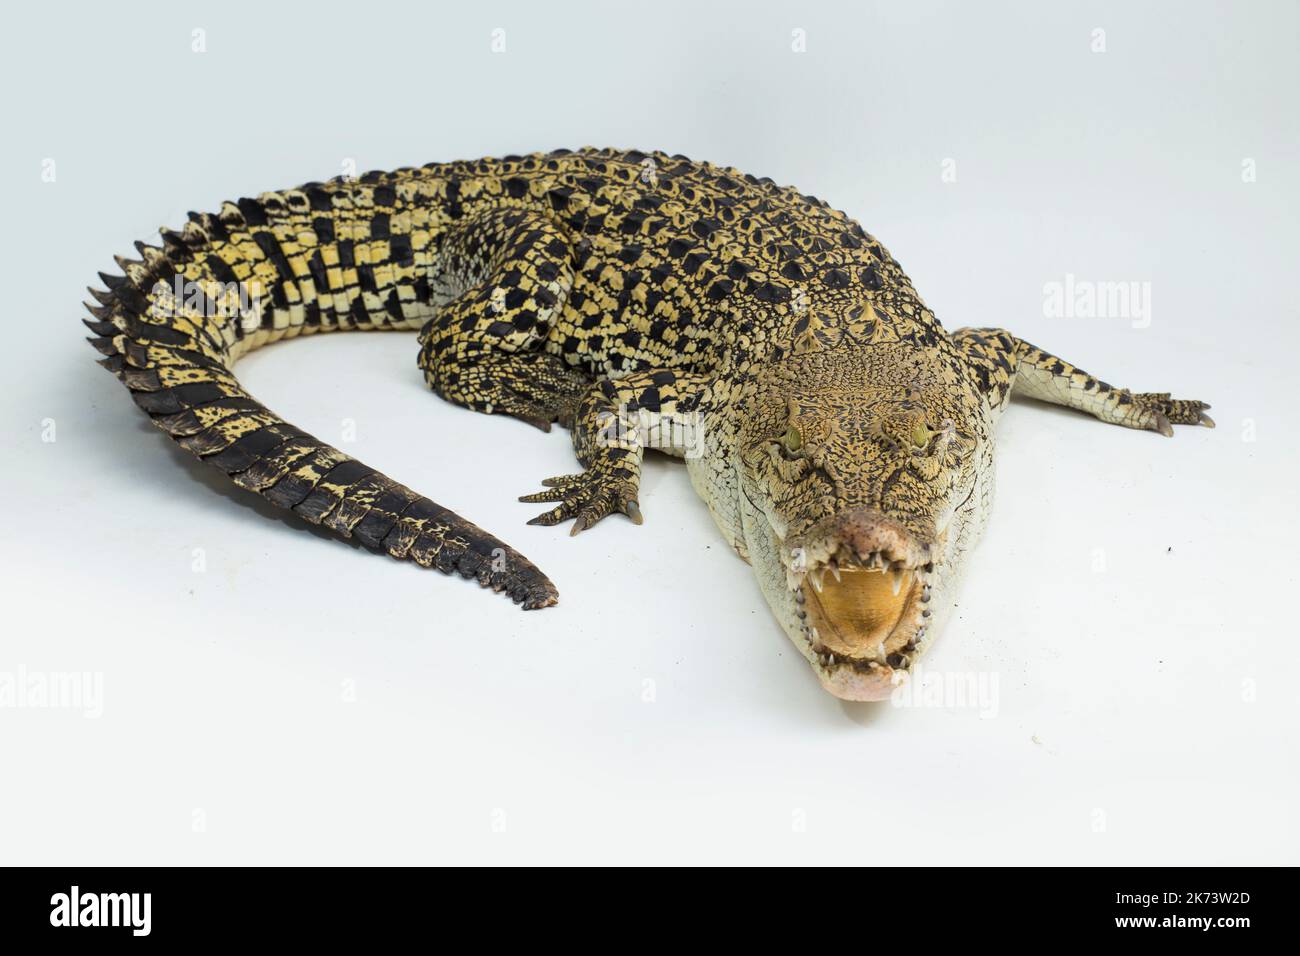 Saltwater crocodile Crocodylus porosus isolated on white background Stock Photo